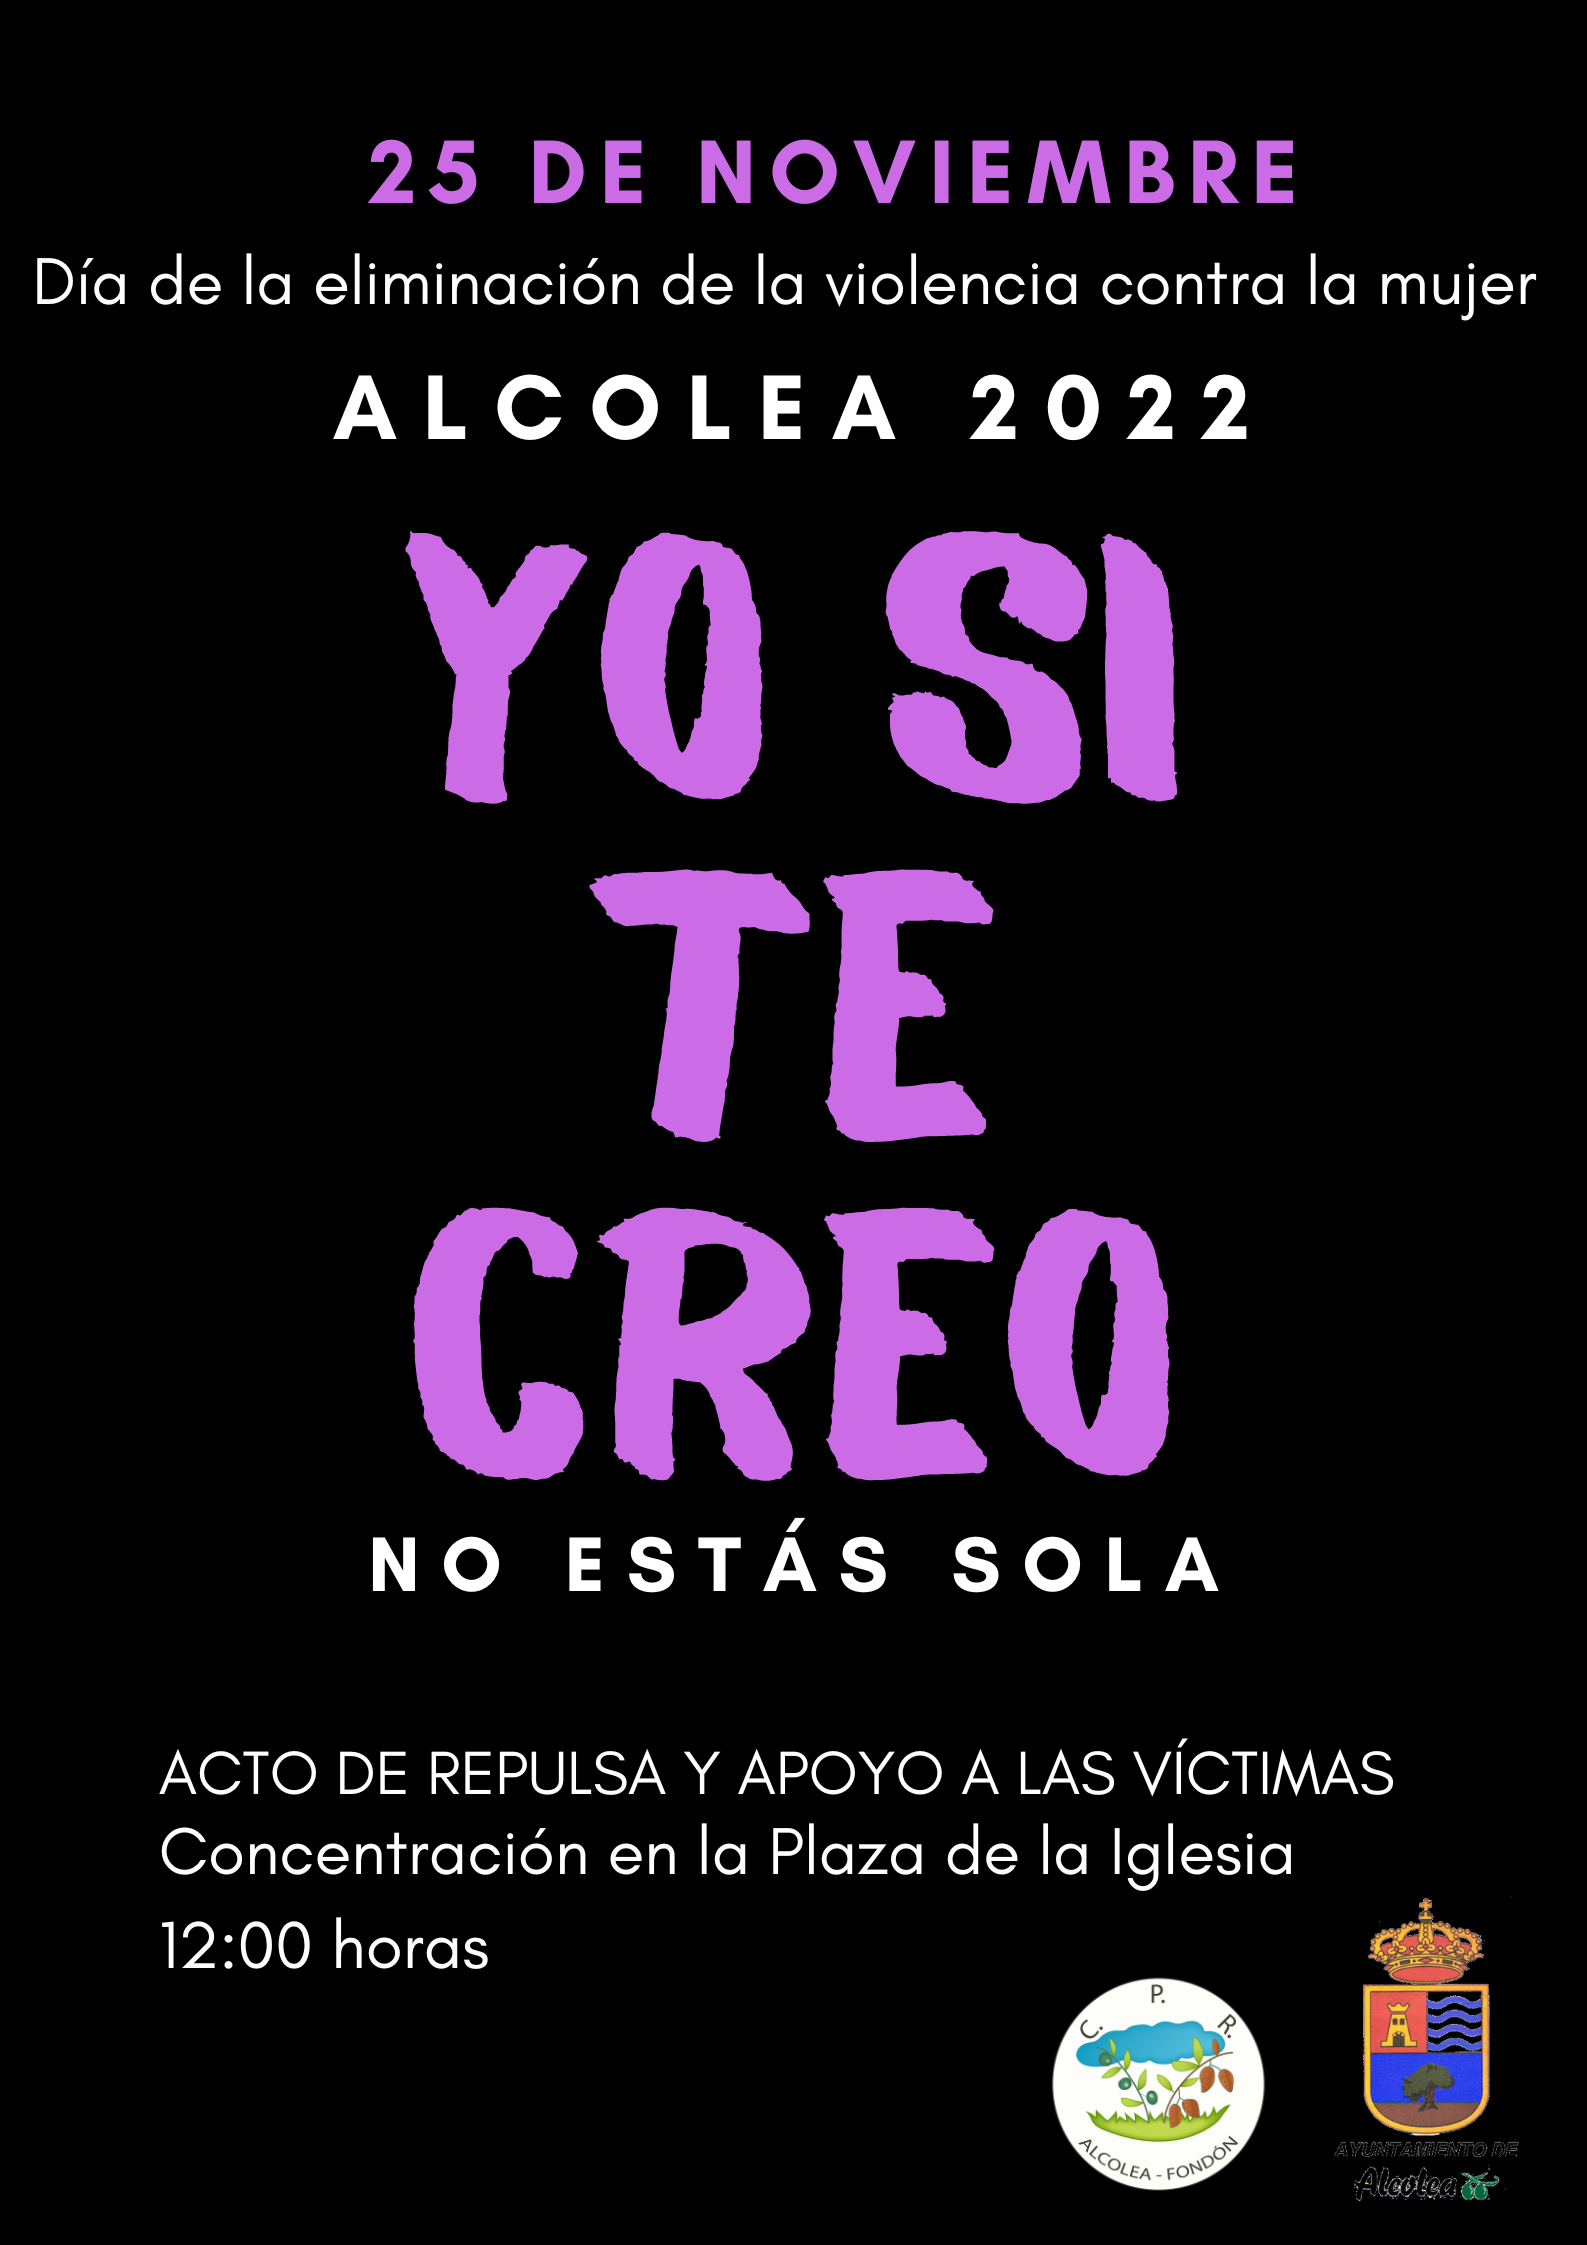 DÍA INTERNACIONAL CONTRA LA VIOLENCIA DE GÉNERO ALCOLEA 2022